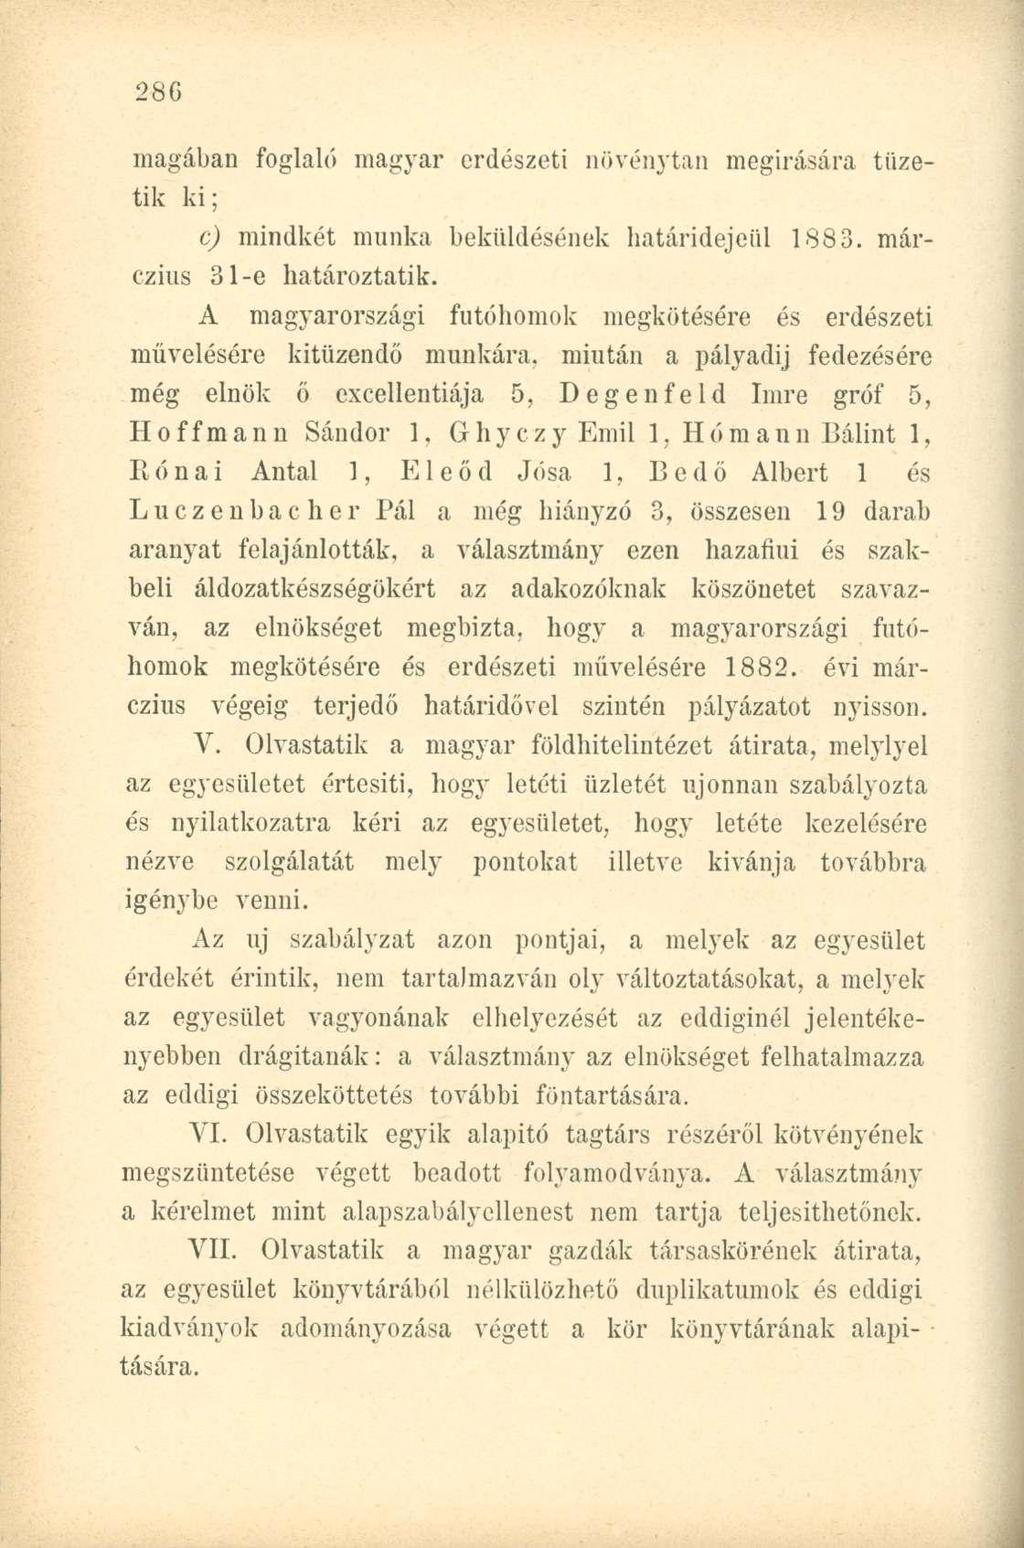 magában foglaló magyar erdészeti növénytan megírására tűzetik ki; c) mindkét munka beküldésének határidejéül 1883. márczius 3 l-e határoztatok.